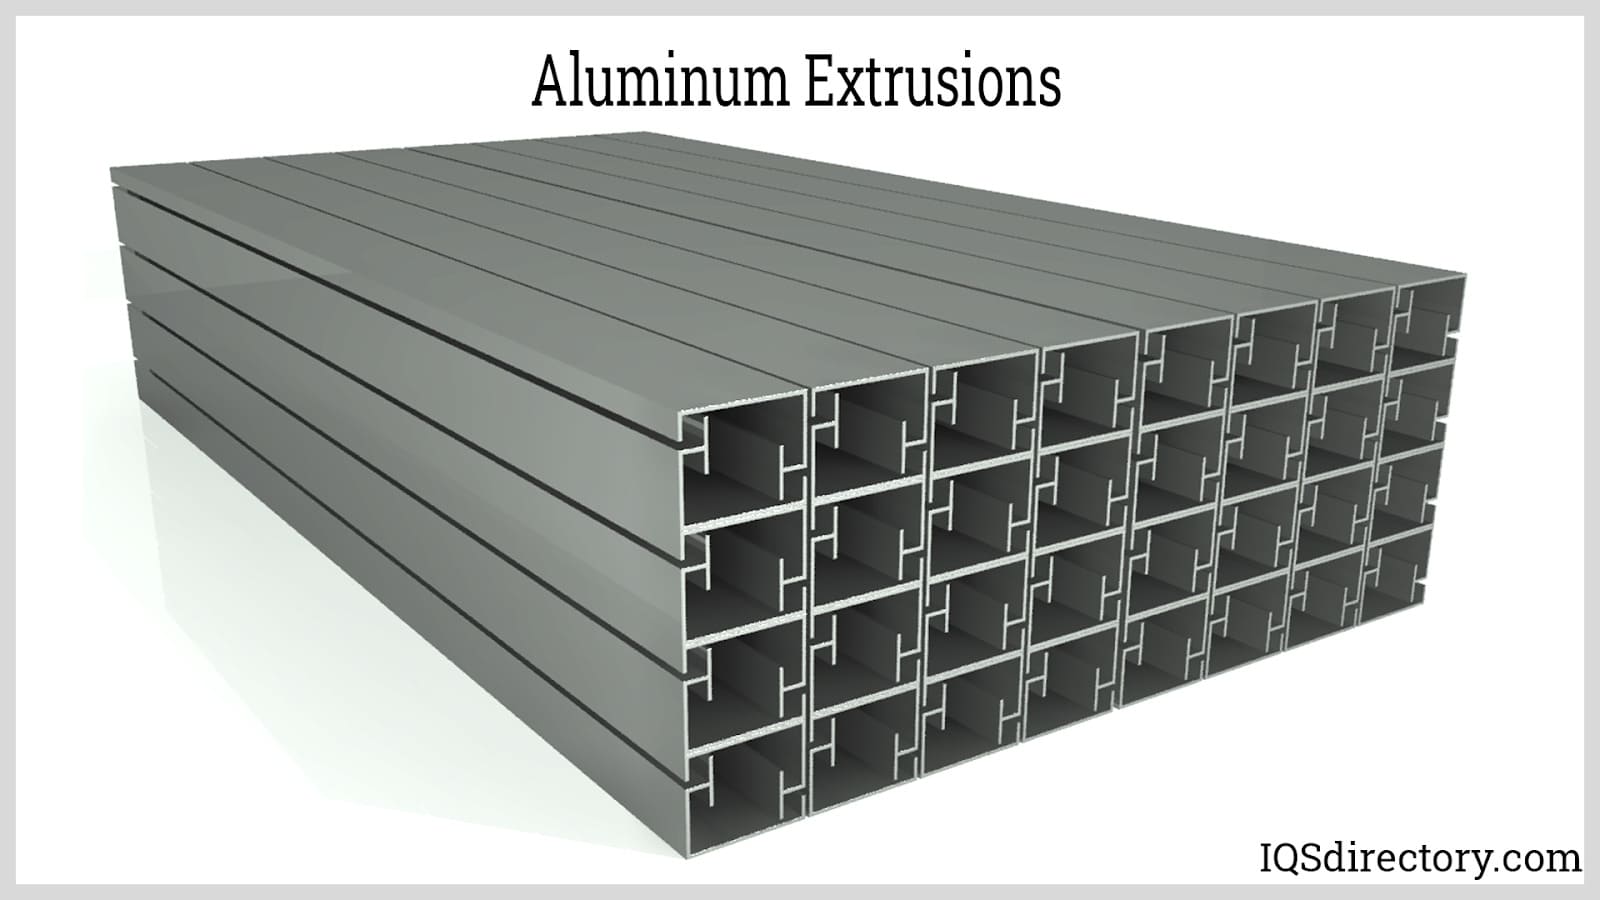 Aluminum Extrusions